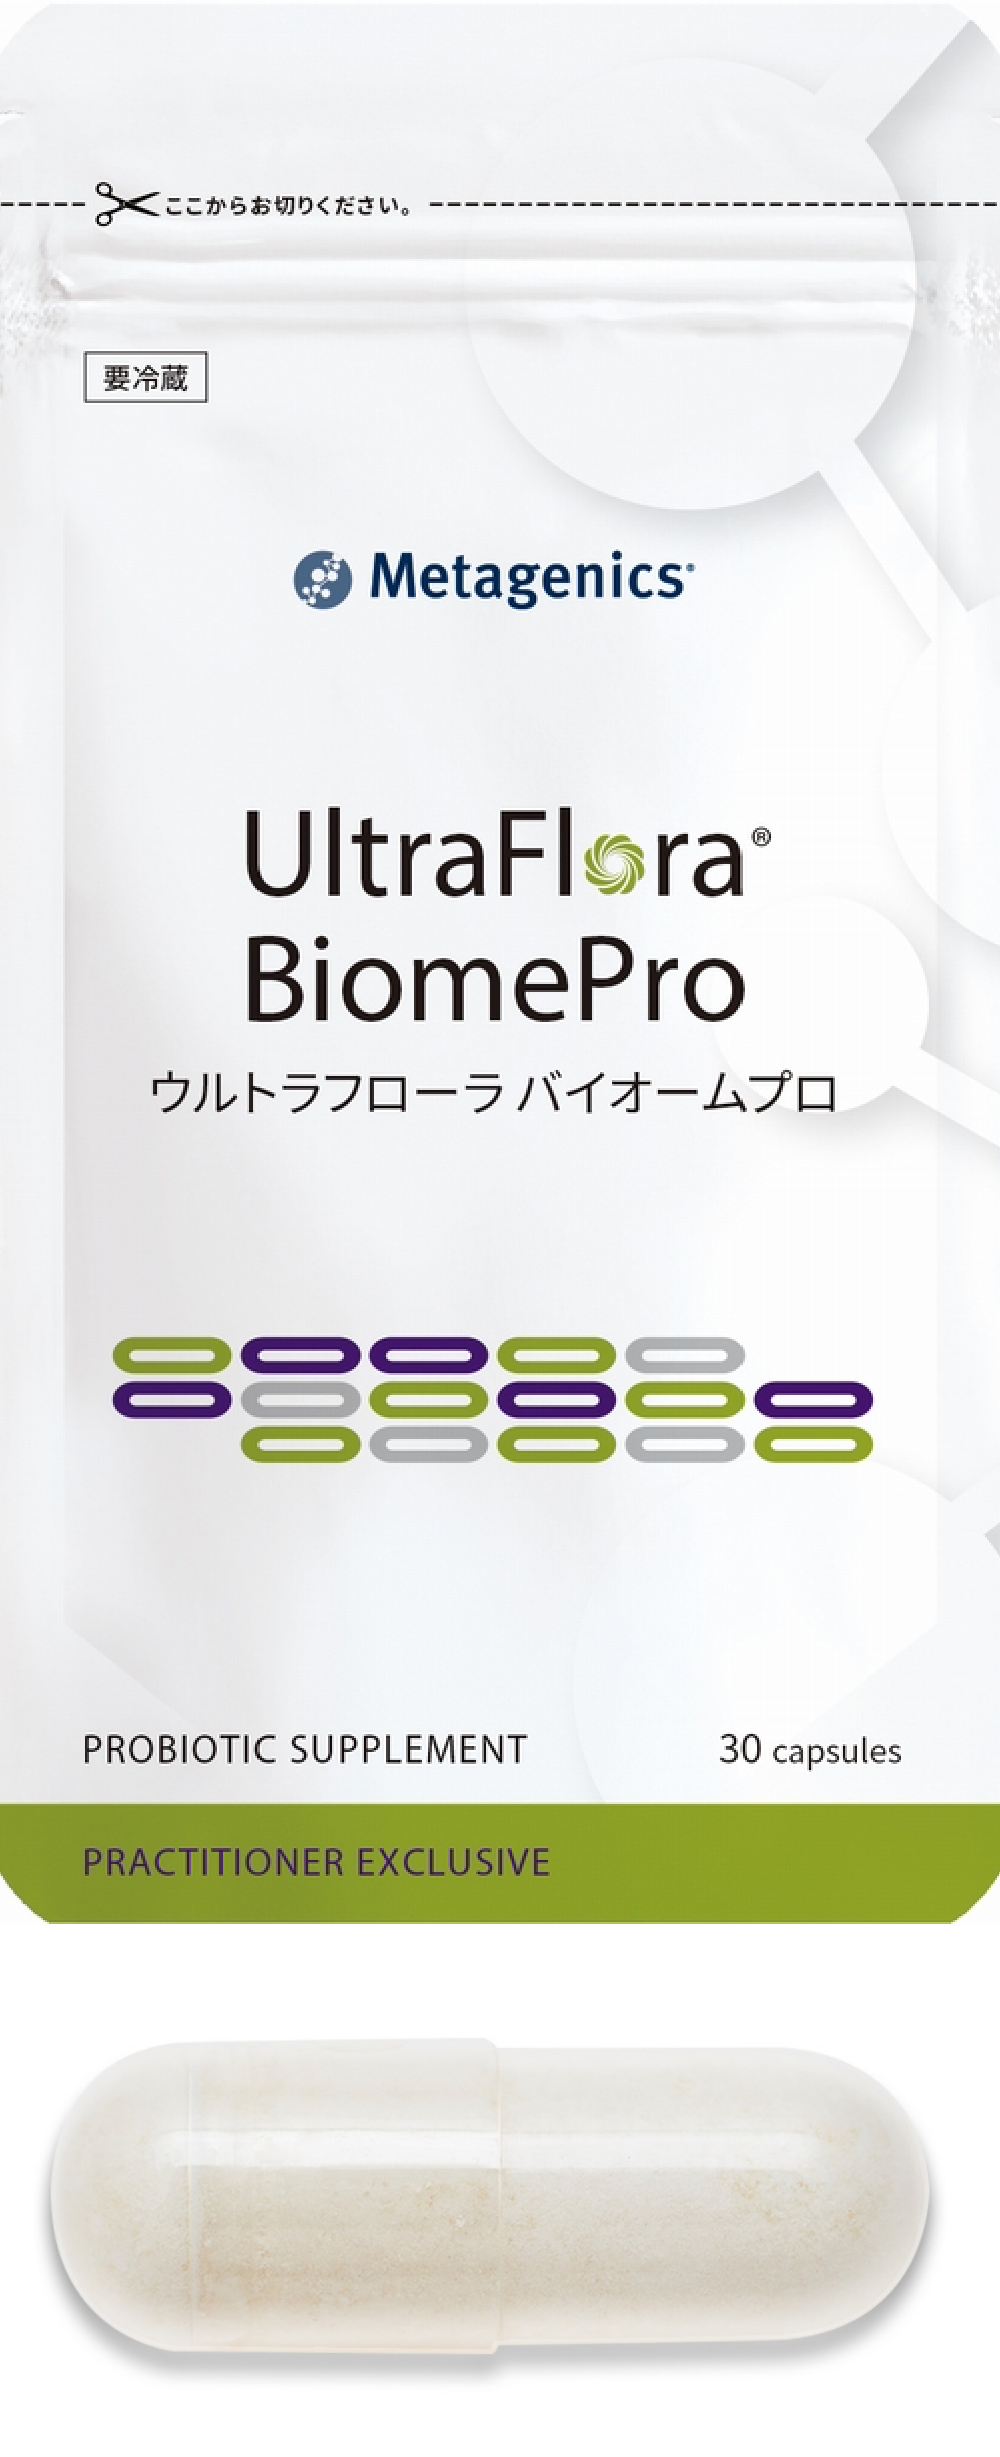 <small>UltraFlora® BiomePro</small><br>ウルトラフローラ <br class="pc-only">バイオームプロのイメージ画像